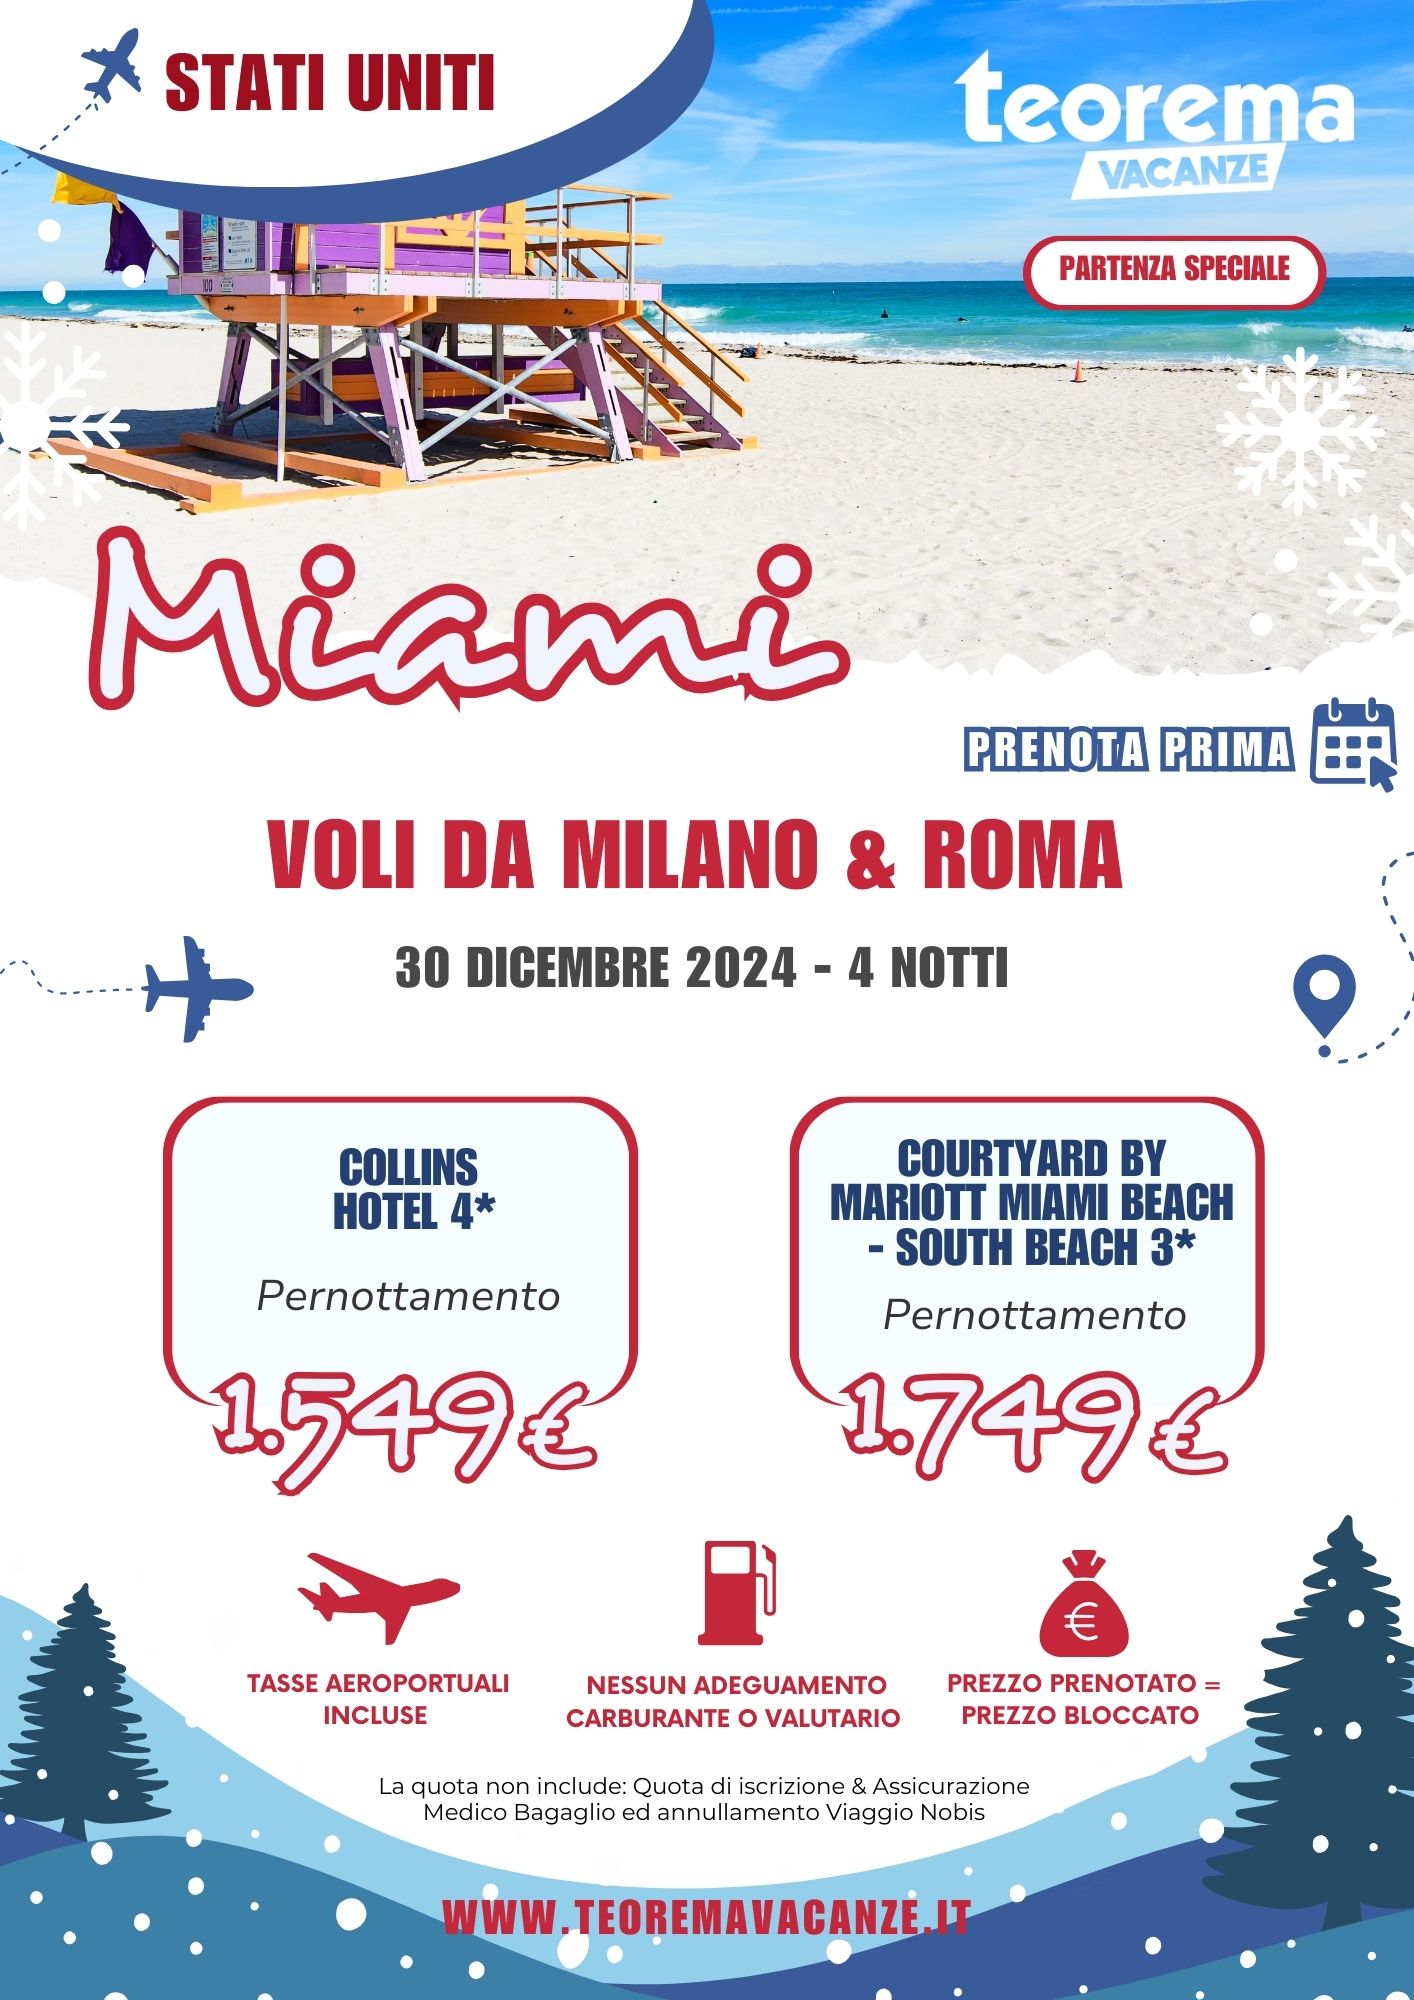 TEOREMA WINTER 2025 - MIAMI DA MILANO & ROMA